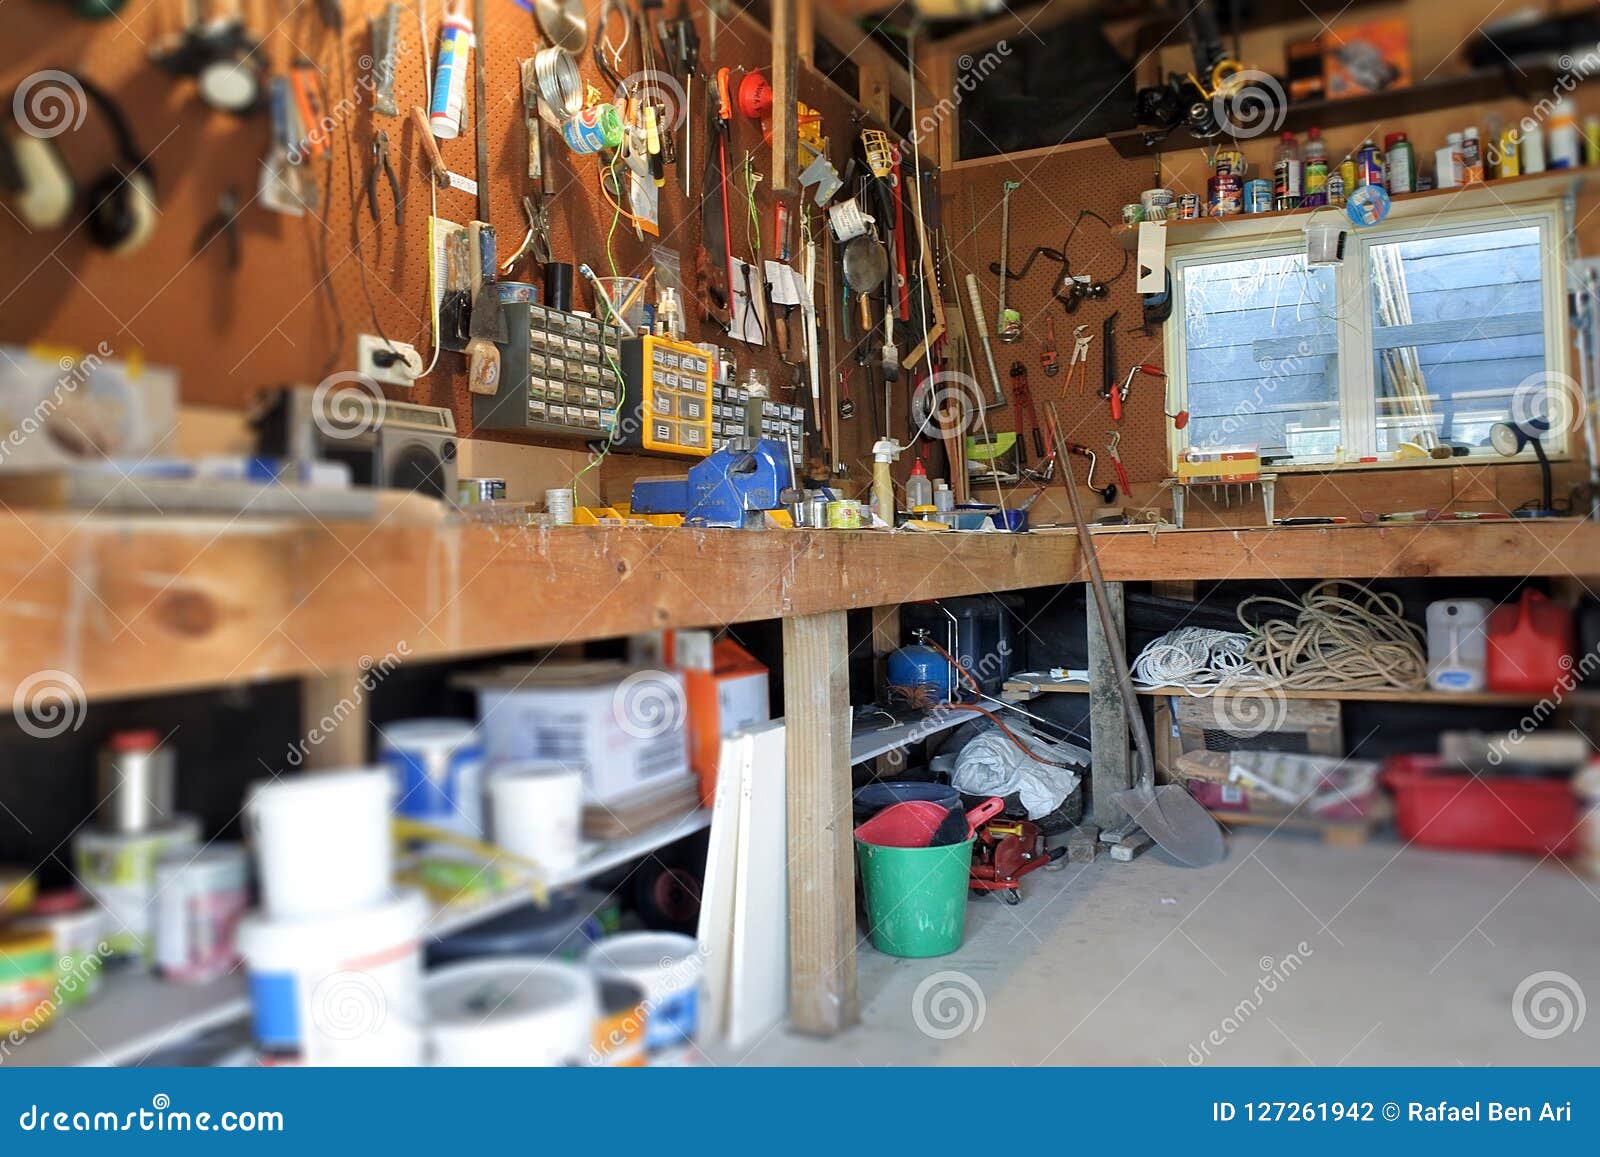 interior view of home garage workshop